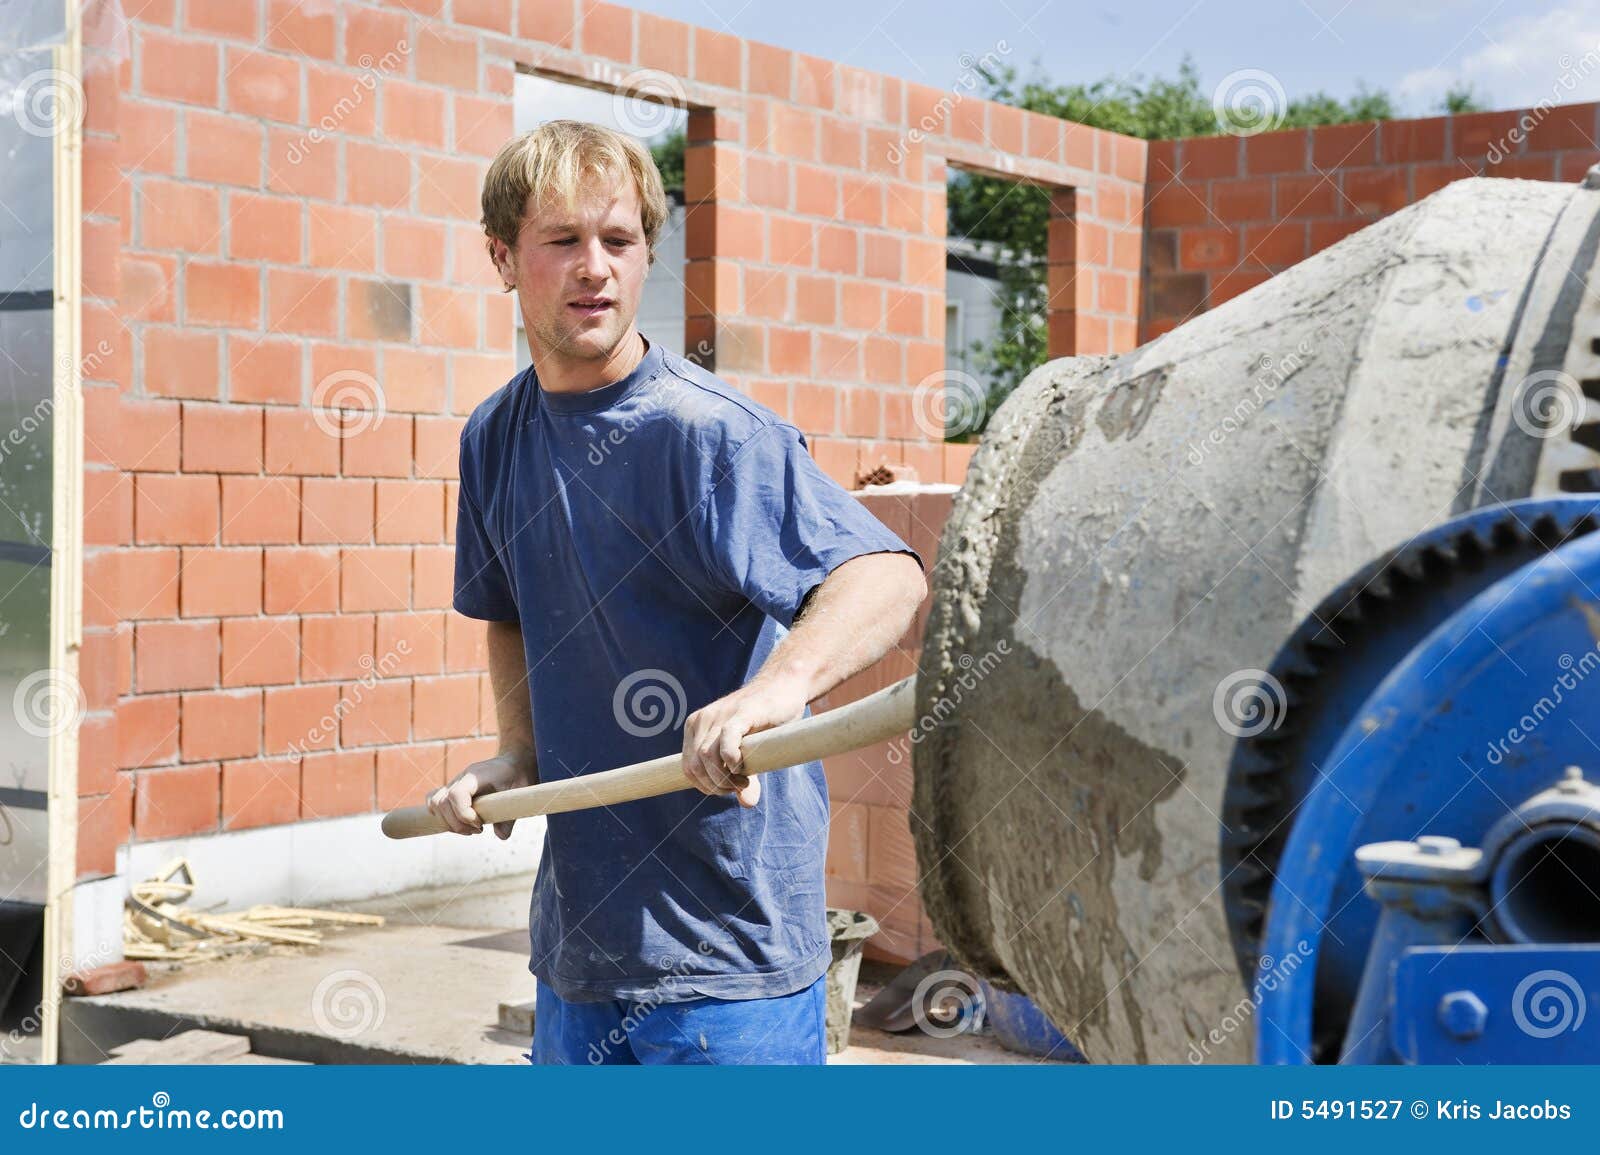 builder filling a conrete mixer